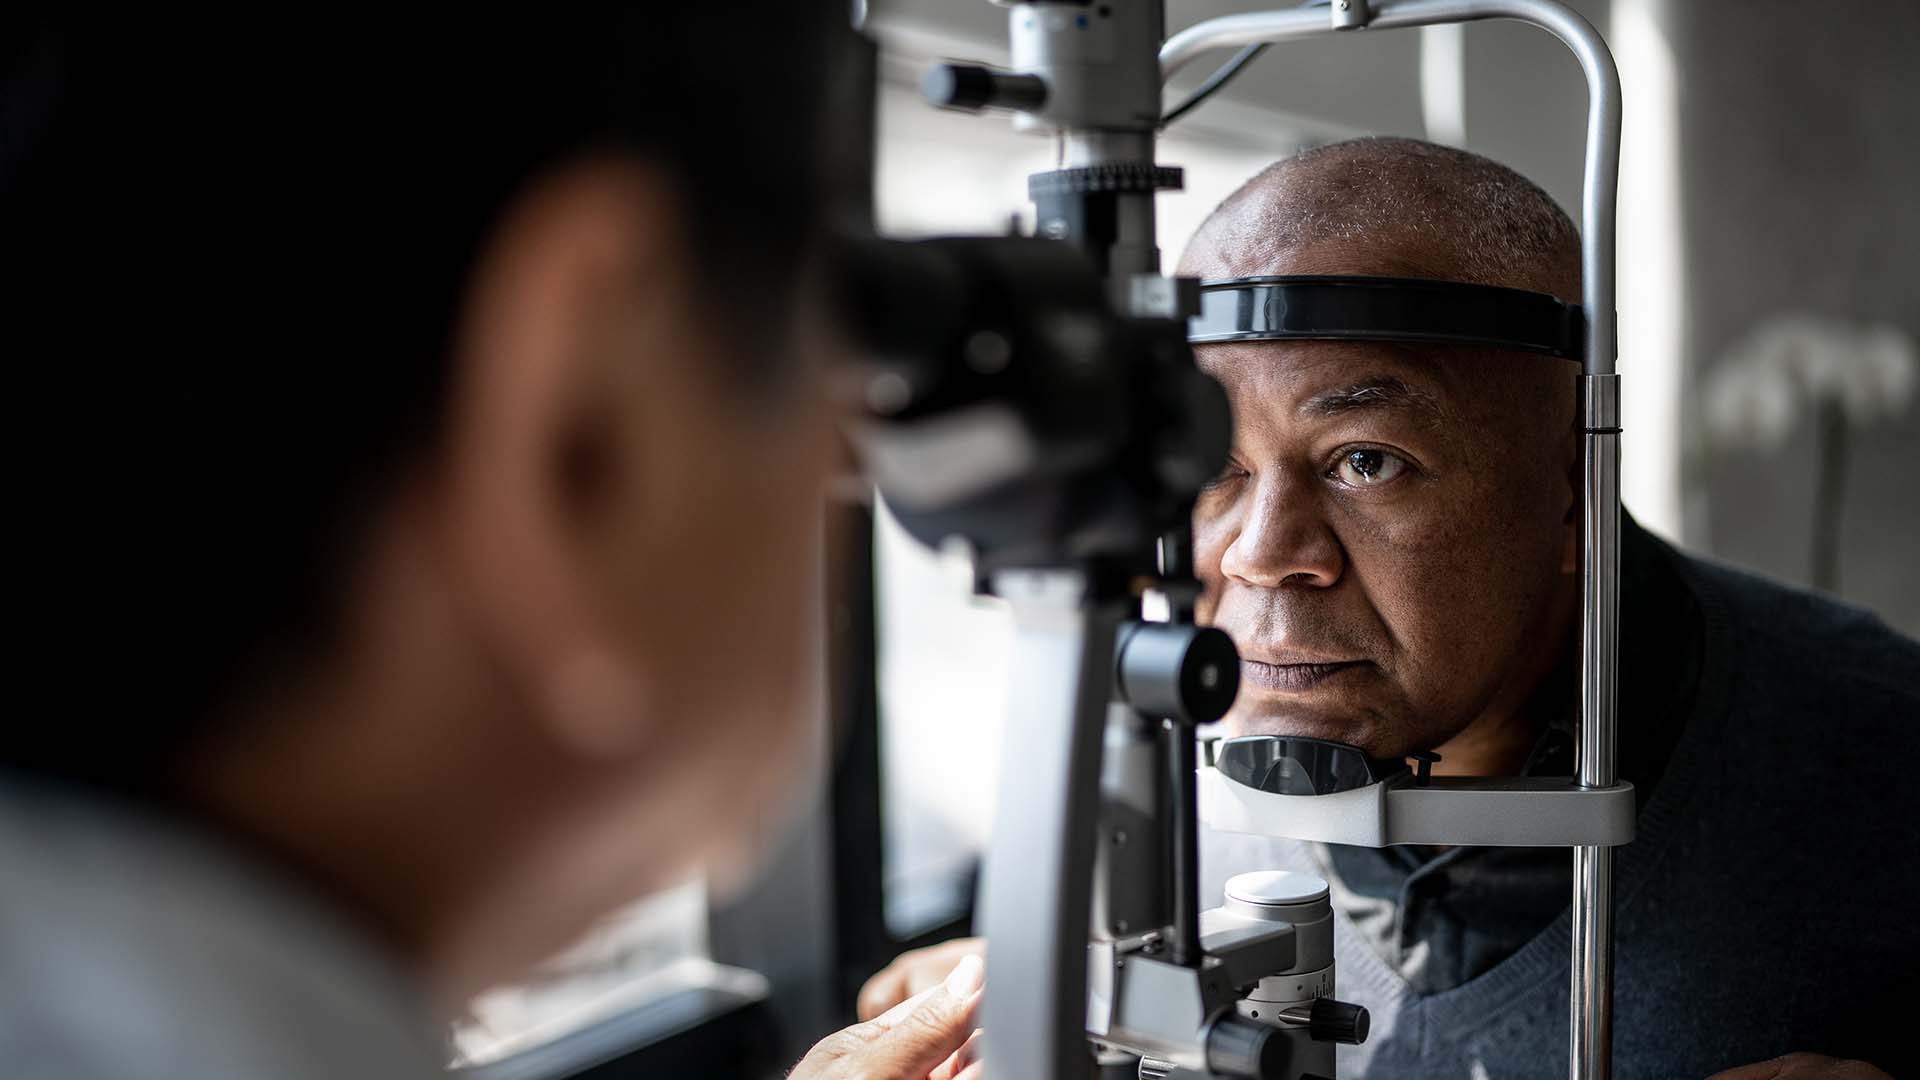 Tener presbicia no significa que se está perdiendo la vista o quedar ciego, sino que es un desgaste de la visión asociada con la edad, como si tratara de canas o arrugas
(Getty Images)